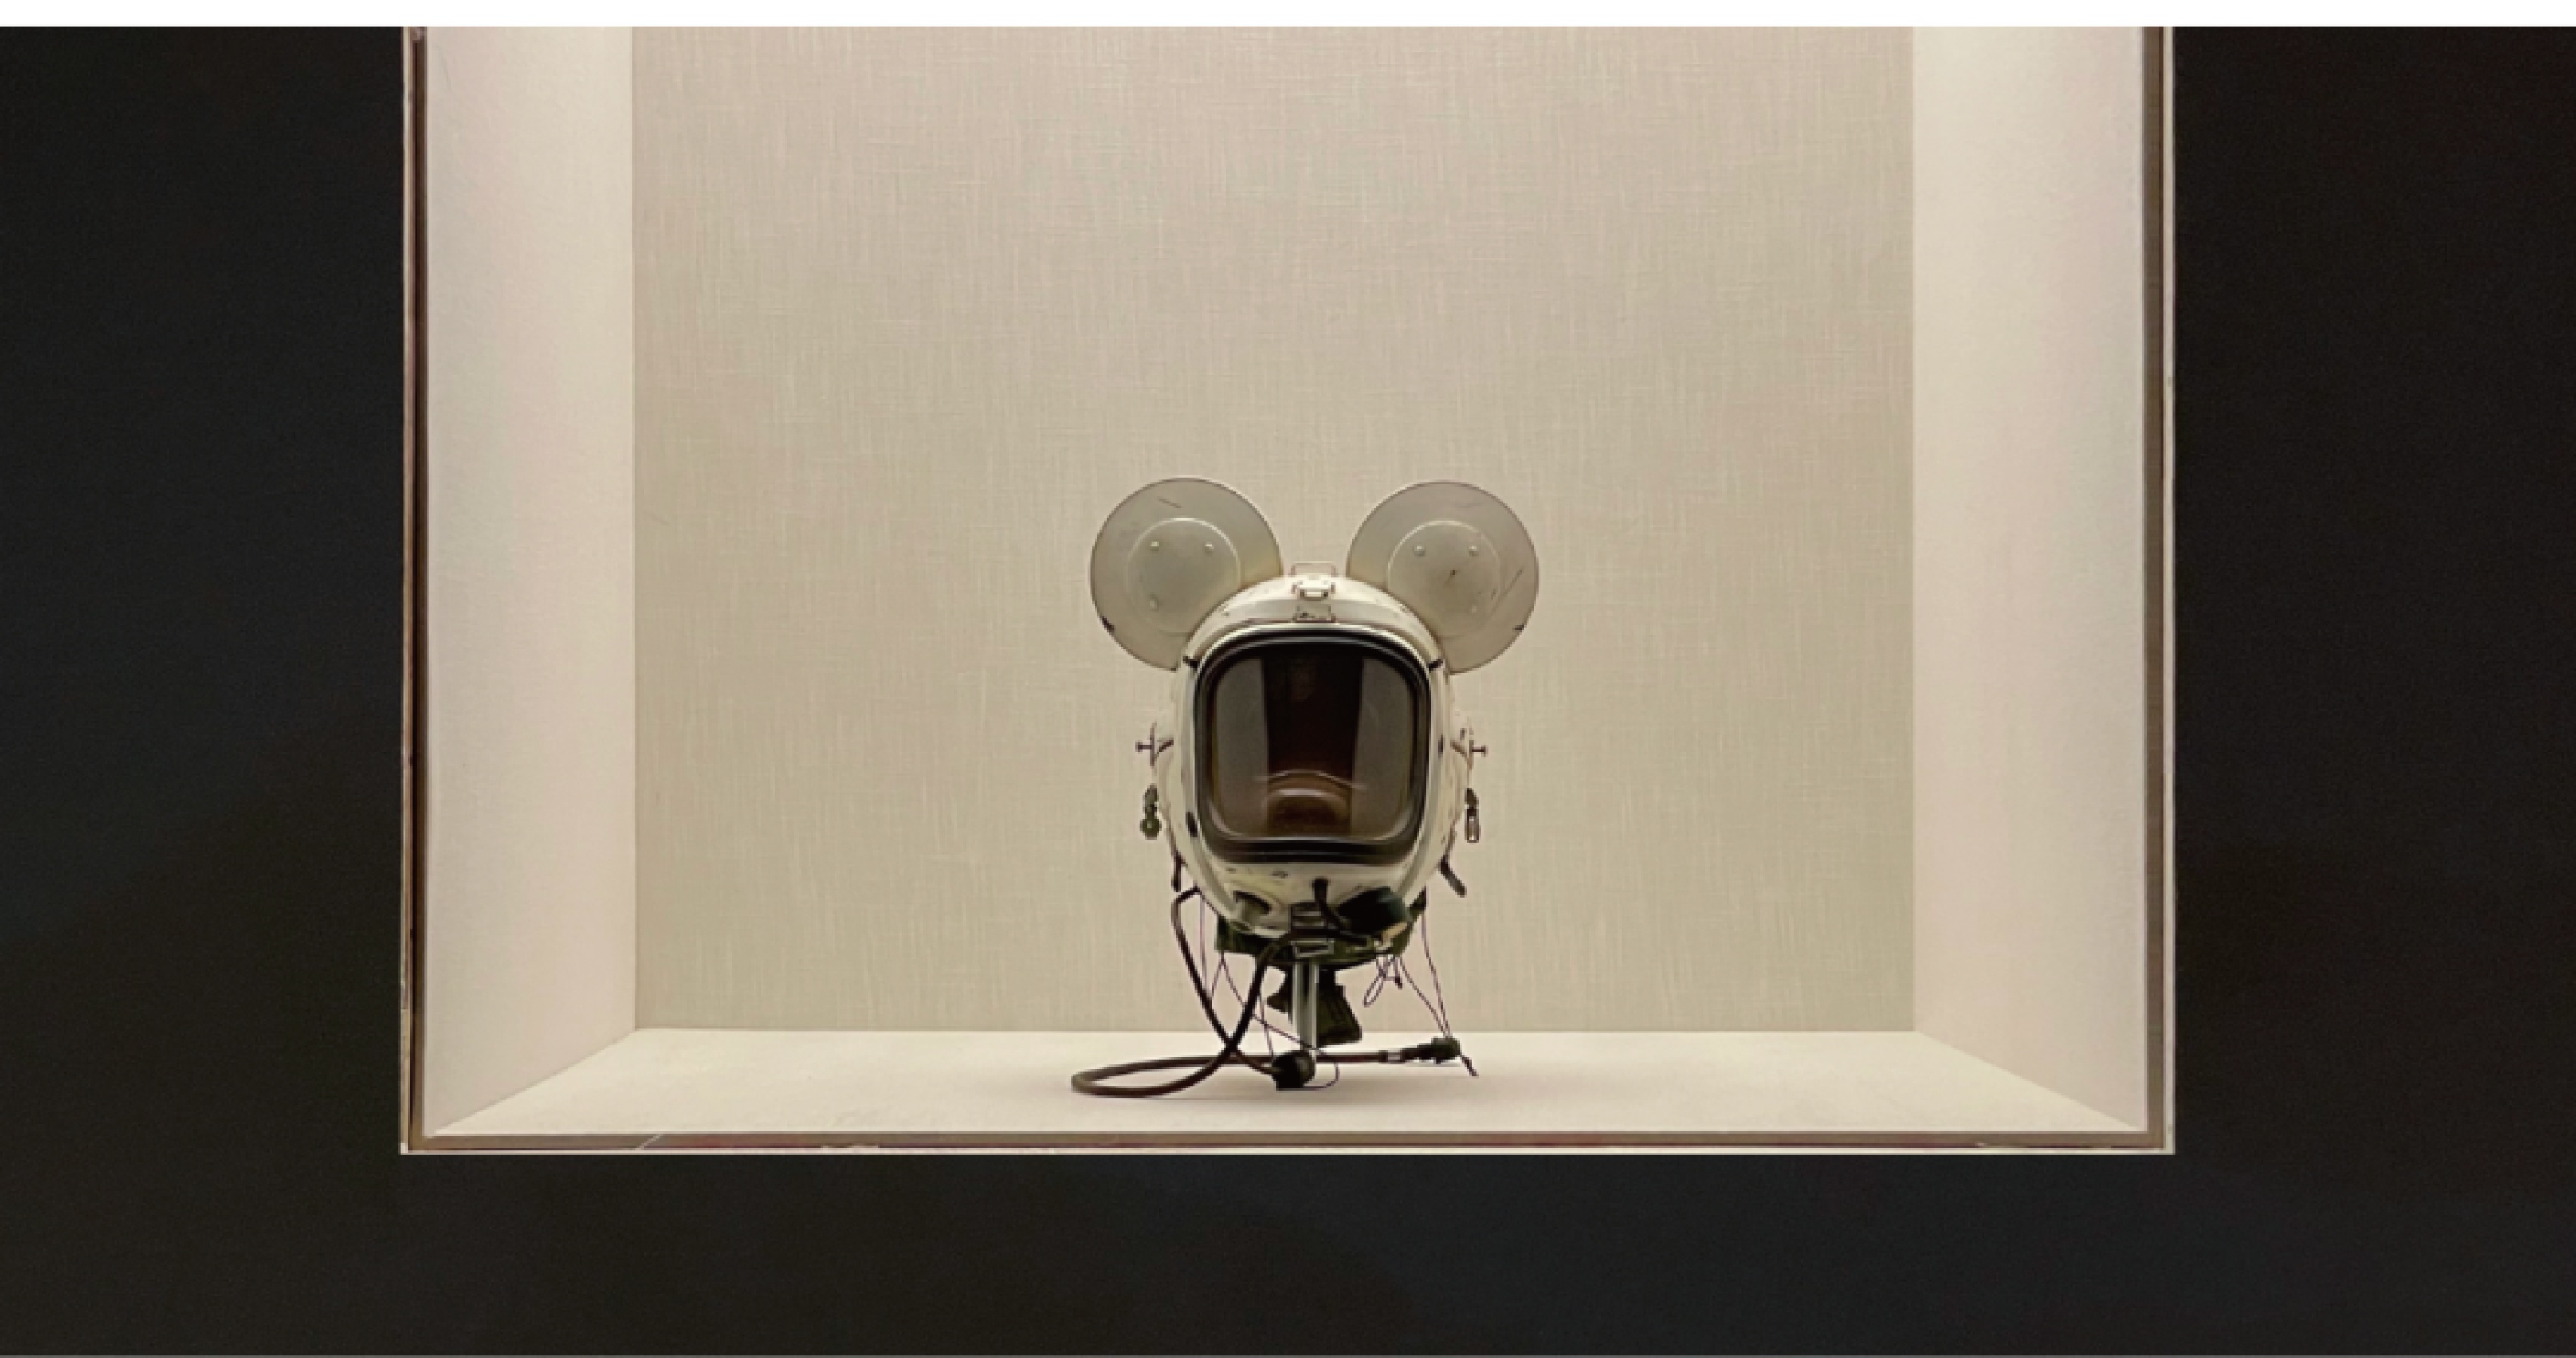 王子耕作品《ミッキーバース》は「好奇心には境がない：ミッキー芸術展」世界ツアー北京会場に出展